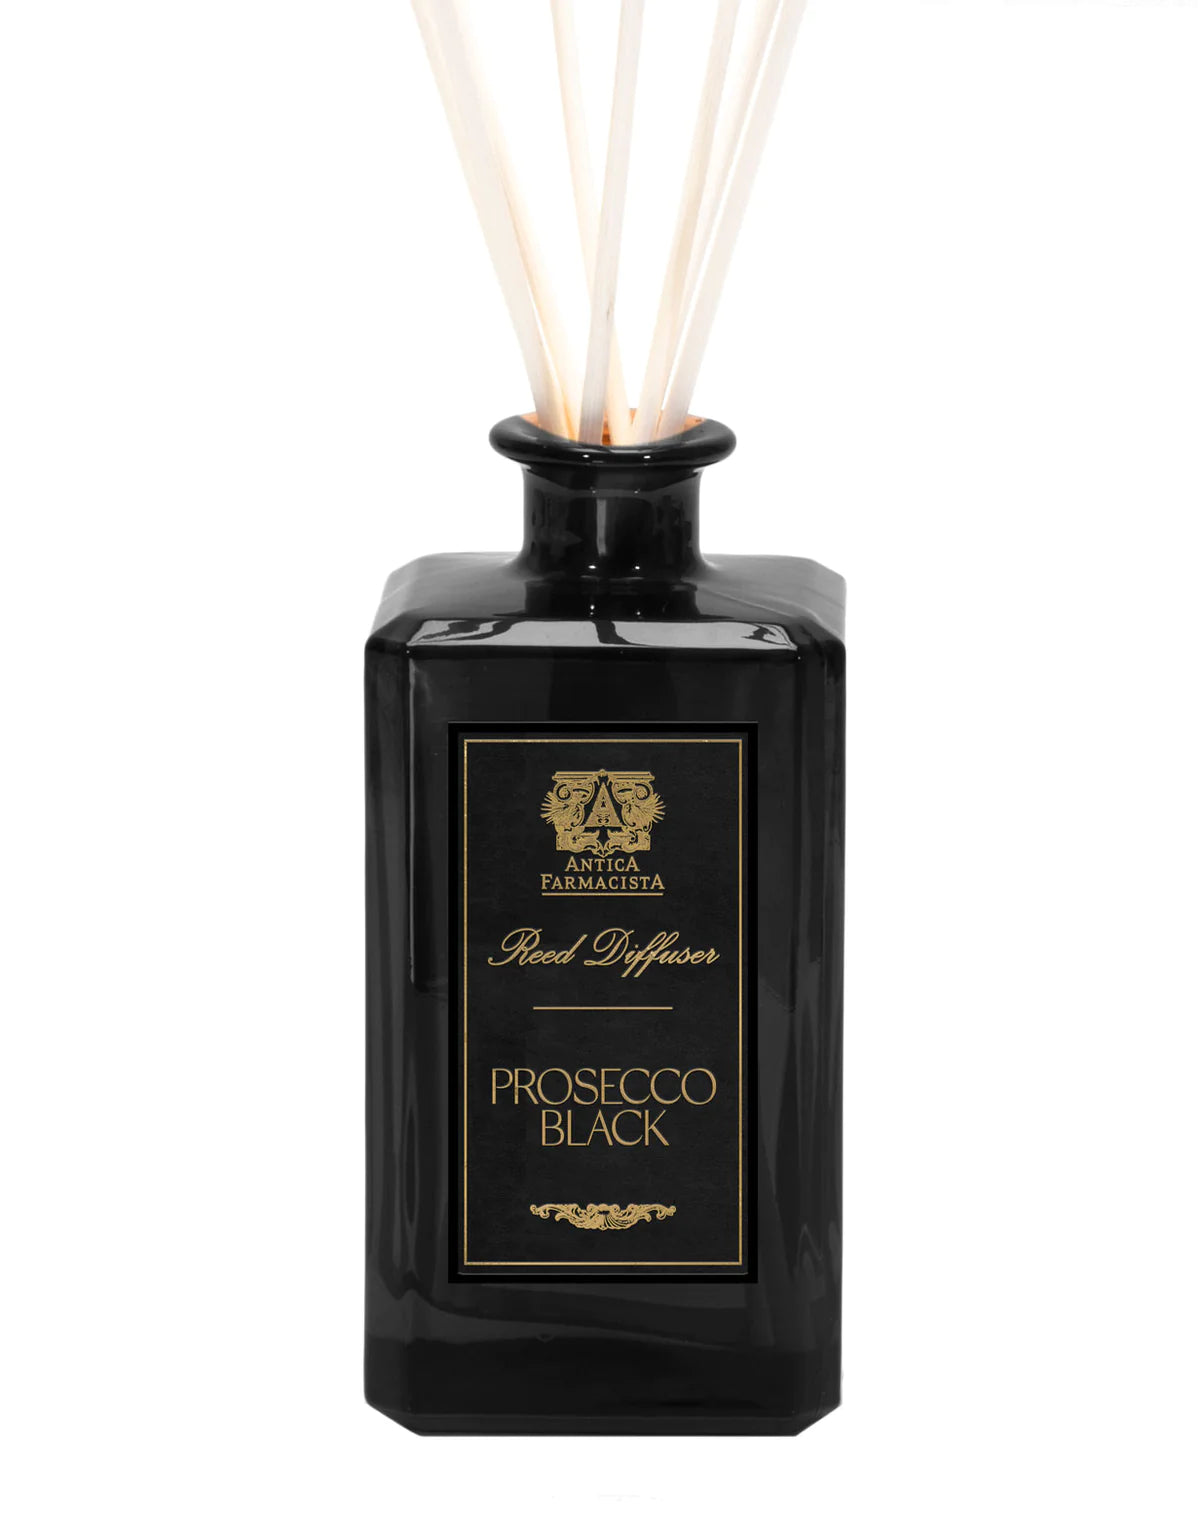 Prosecco Black 320 ml Diffuser